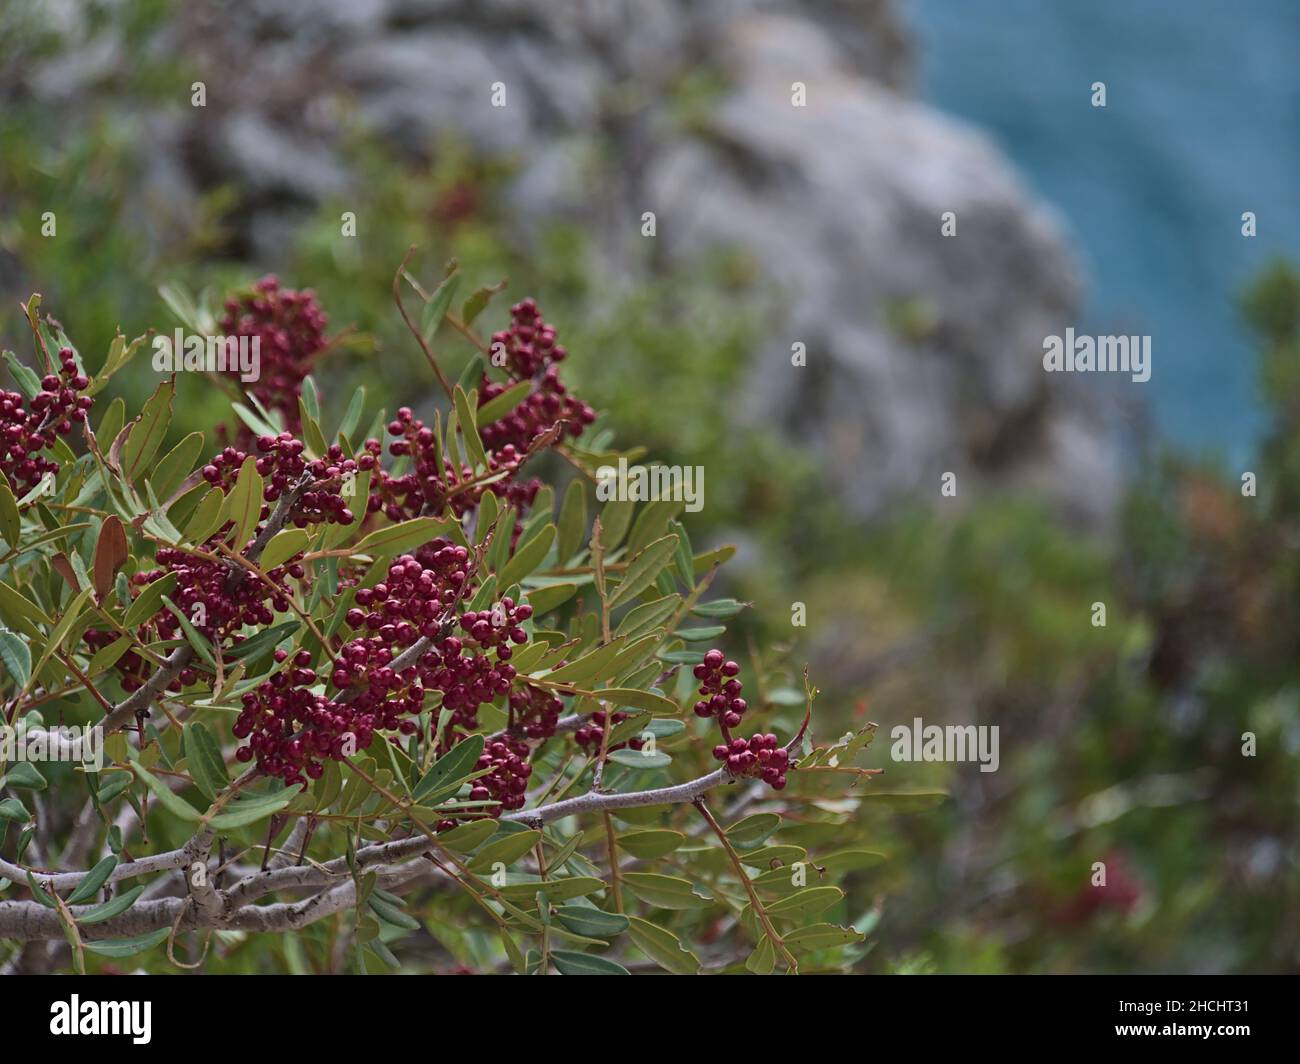 Nahaufnahme eines Linsenbaums (Pistacia lentiscus) mit grünen Blättern und roten Beeren im Calanques Nationalpark in der Nähe von Cassis, Französische Riviera. Stockfoto